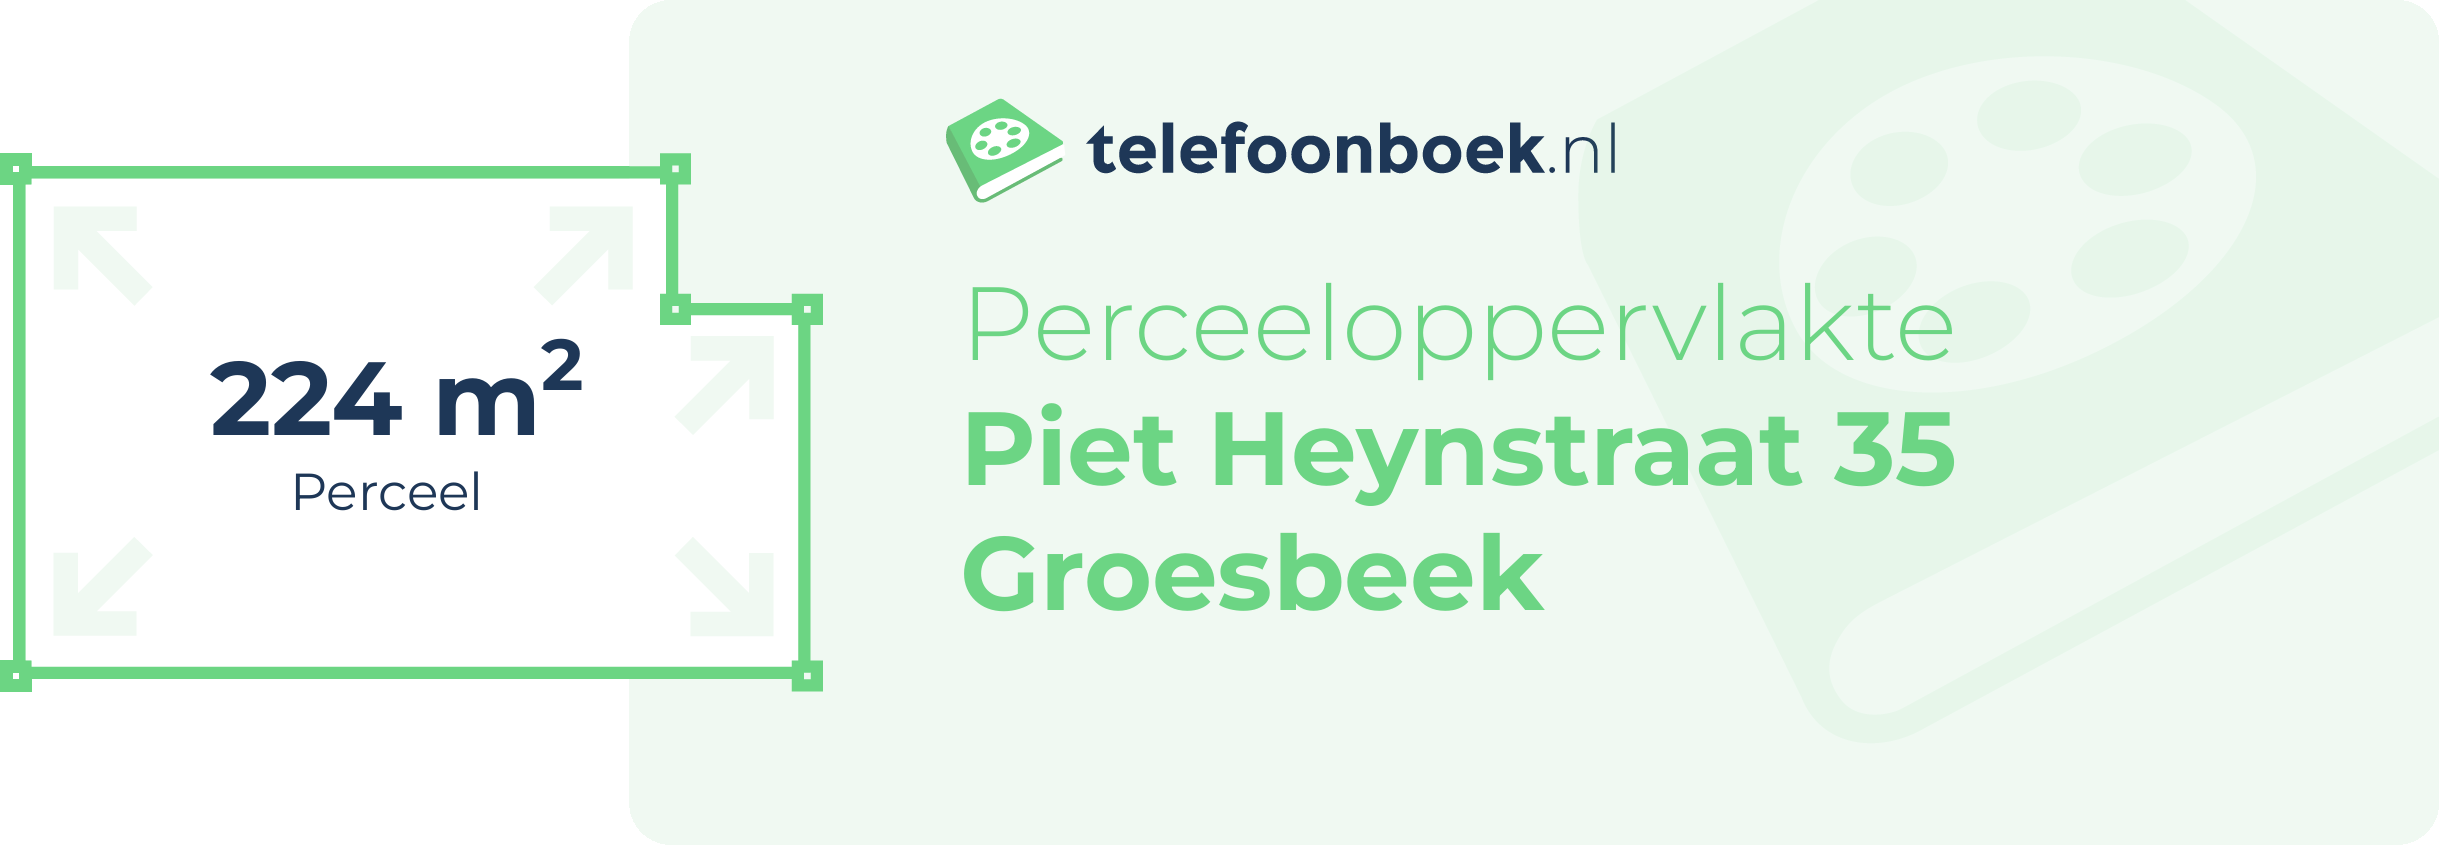 Perceeloppervlakte Piet Heynstraat 35 Groesbeek